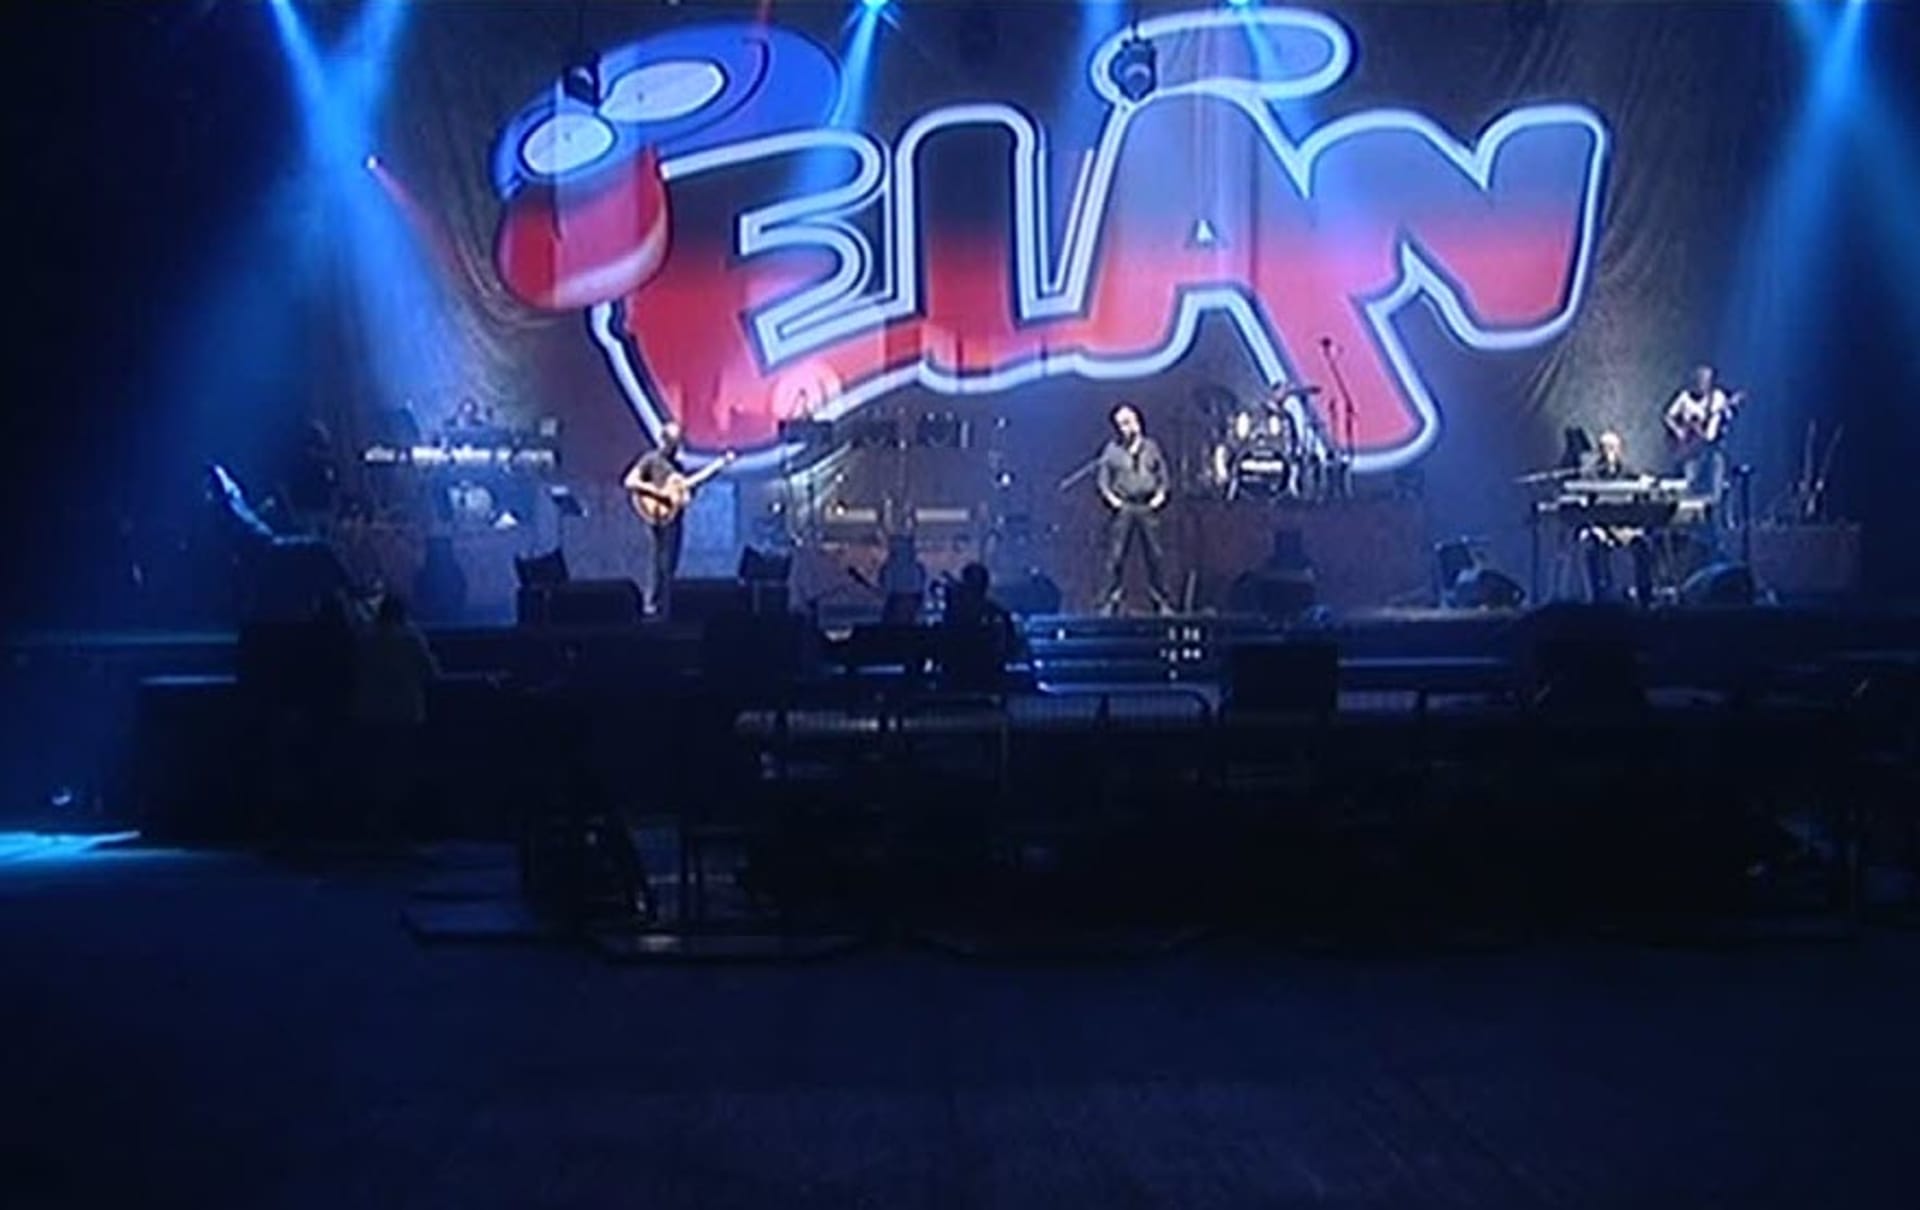 Video VIP zprávy: Slovenská skupina Elán vyráží na turné. Přijdete se podívat, jak to "staříkům" šlape?